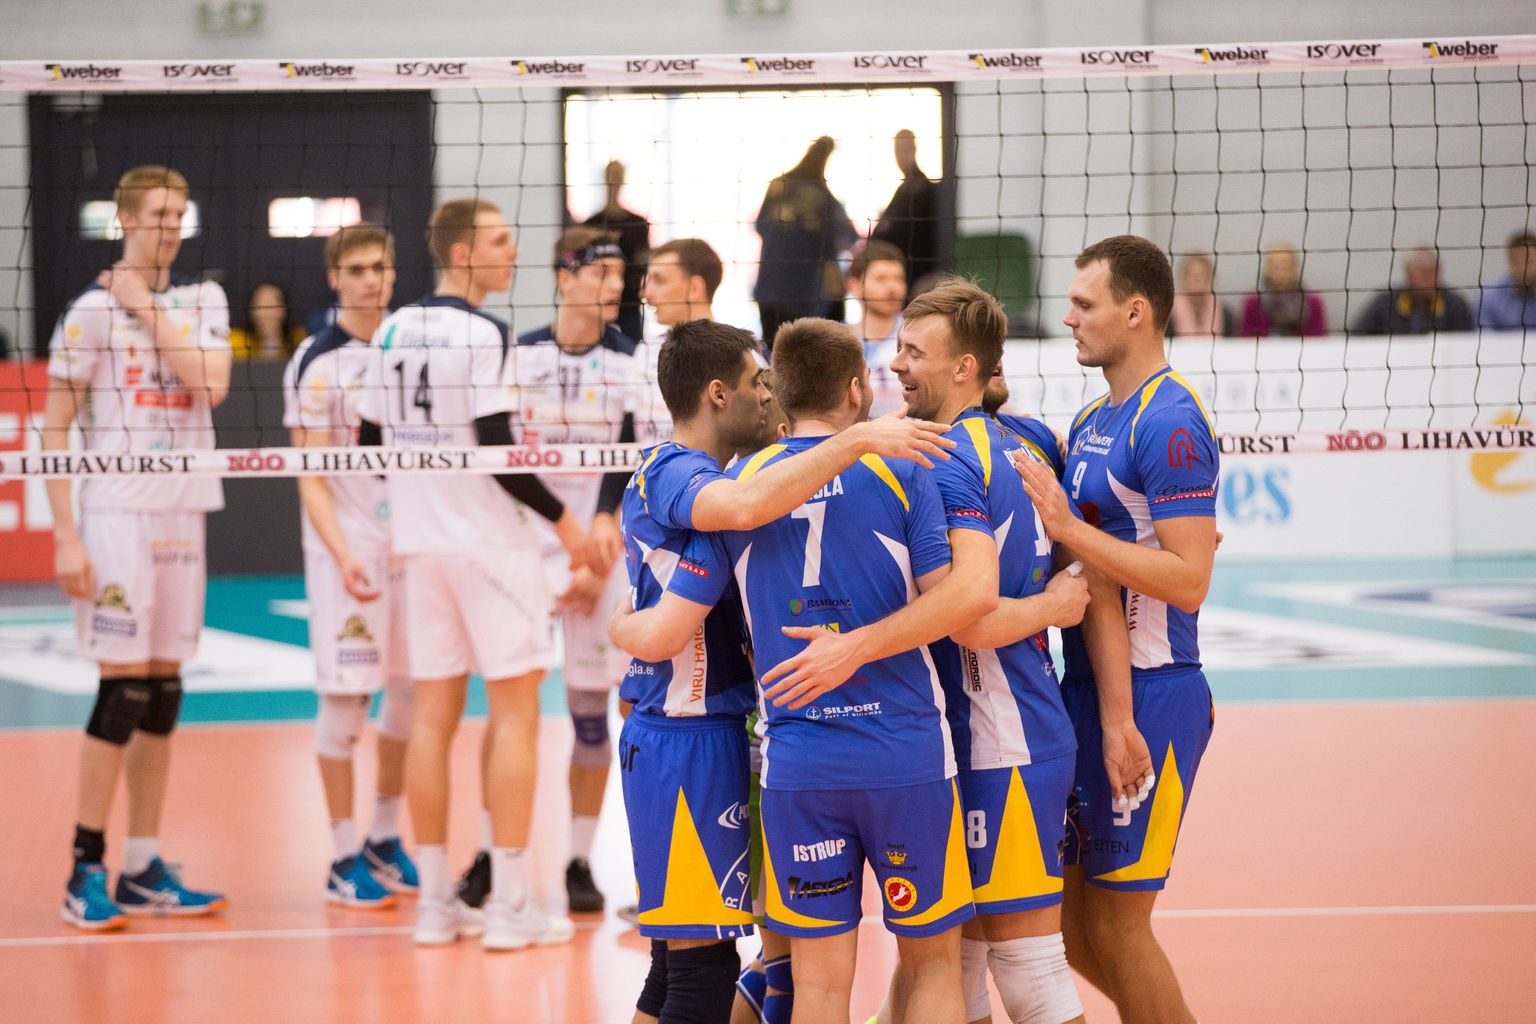 Balti liiga poolfinaalis olid Tartu mängijad (tagaplaanil) Rakvere meeskonna (esiplaanil) vastu võimetud. Eesti meistriliiga poolfinaalis on neil revanšivõimalus.